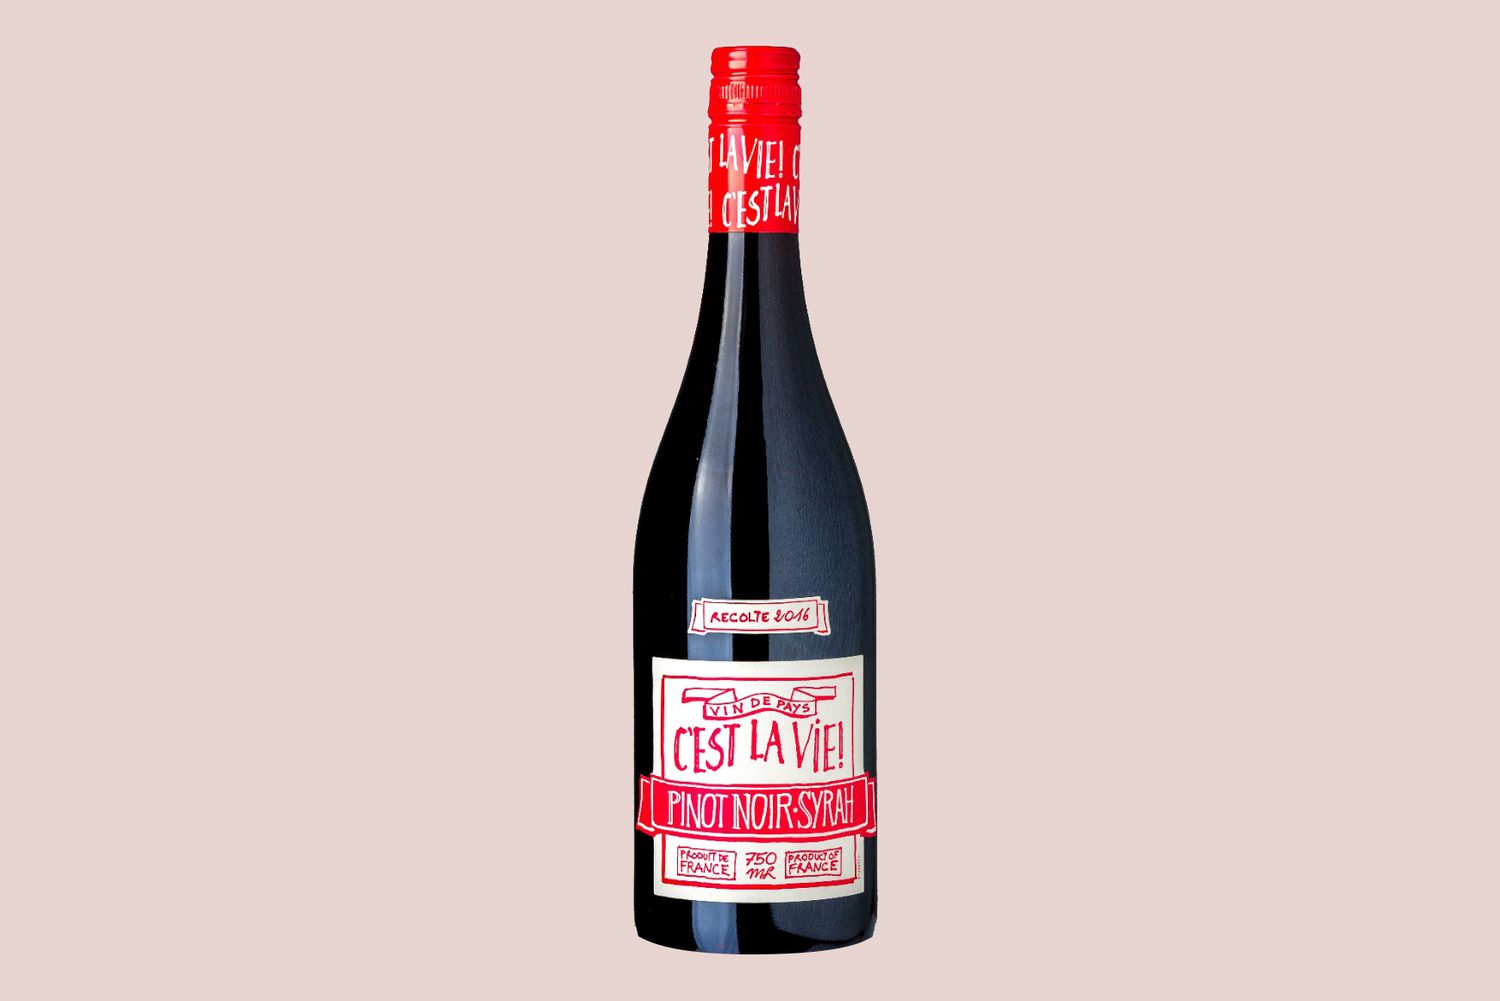 Cest La Vie Pinot Noir Syrah wine bottle